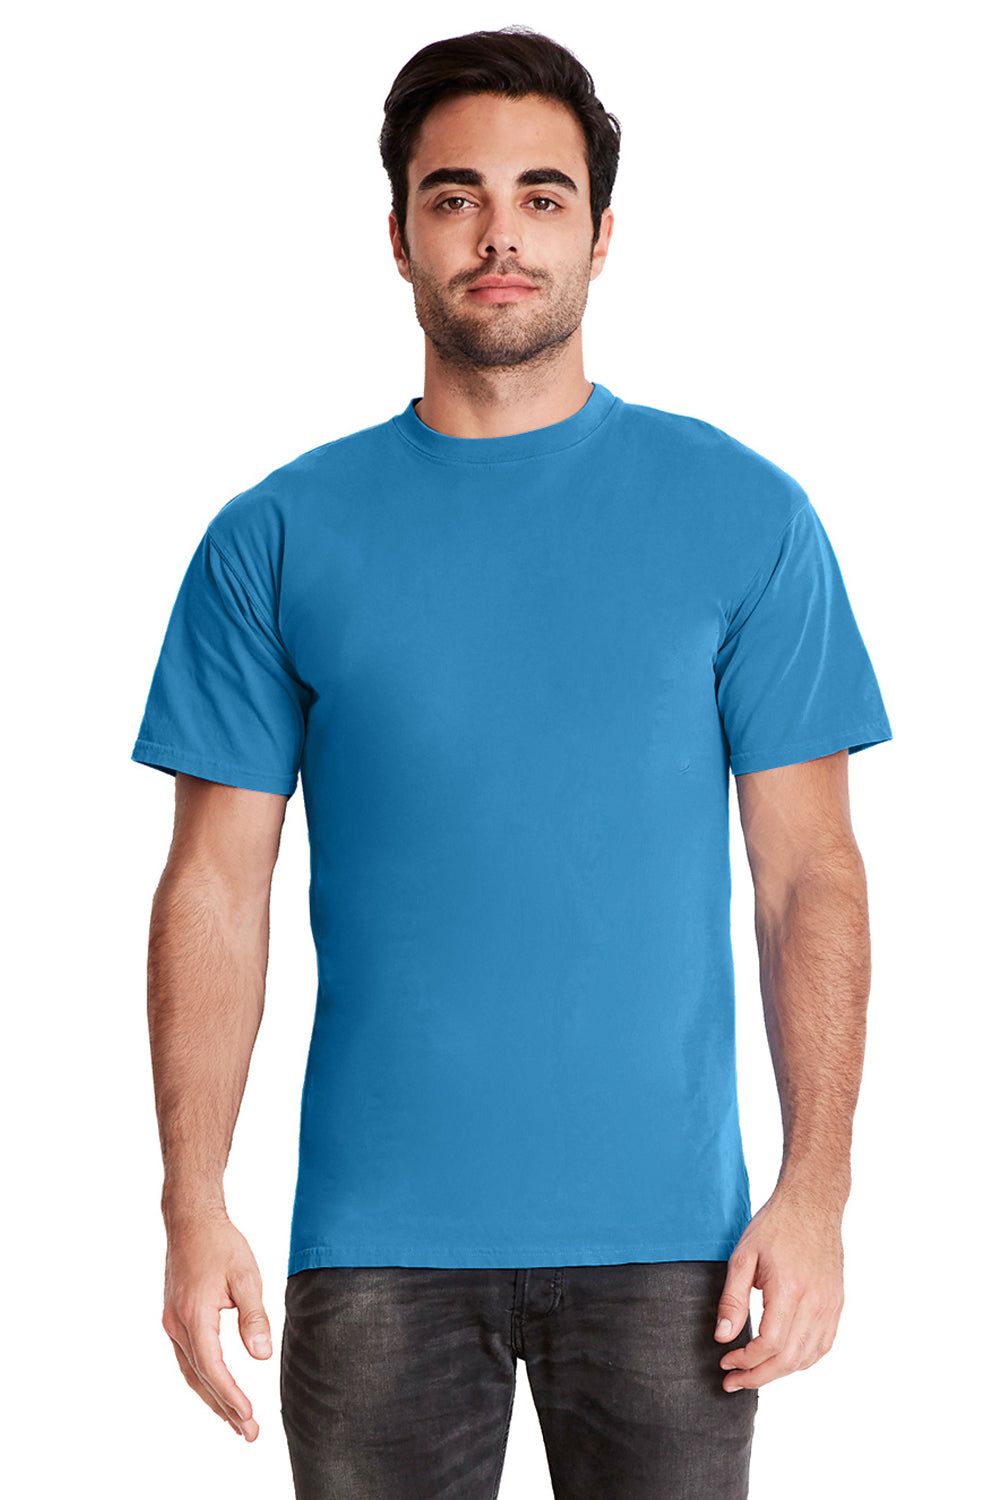 Next Level 7410 Mens Inspired Dye Jersey Short Sleeve Crewneck T-Shirt Ocean Blue Front